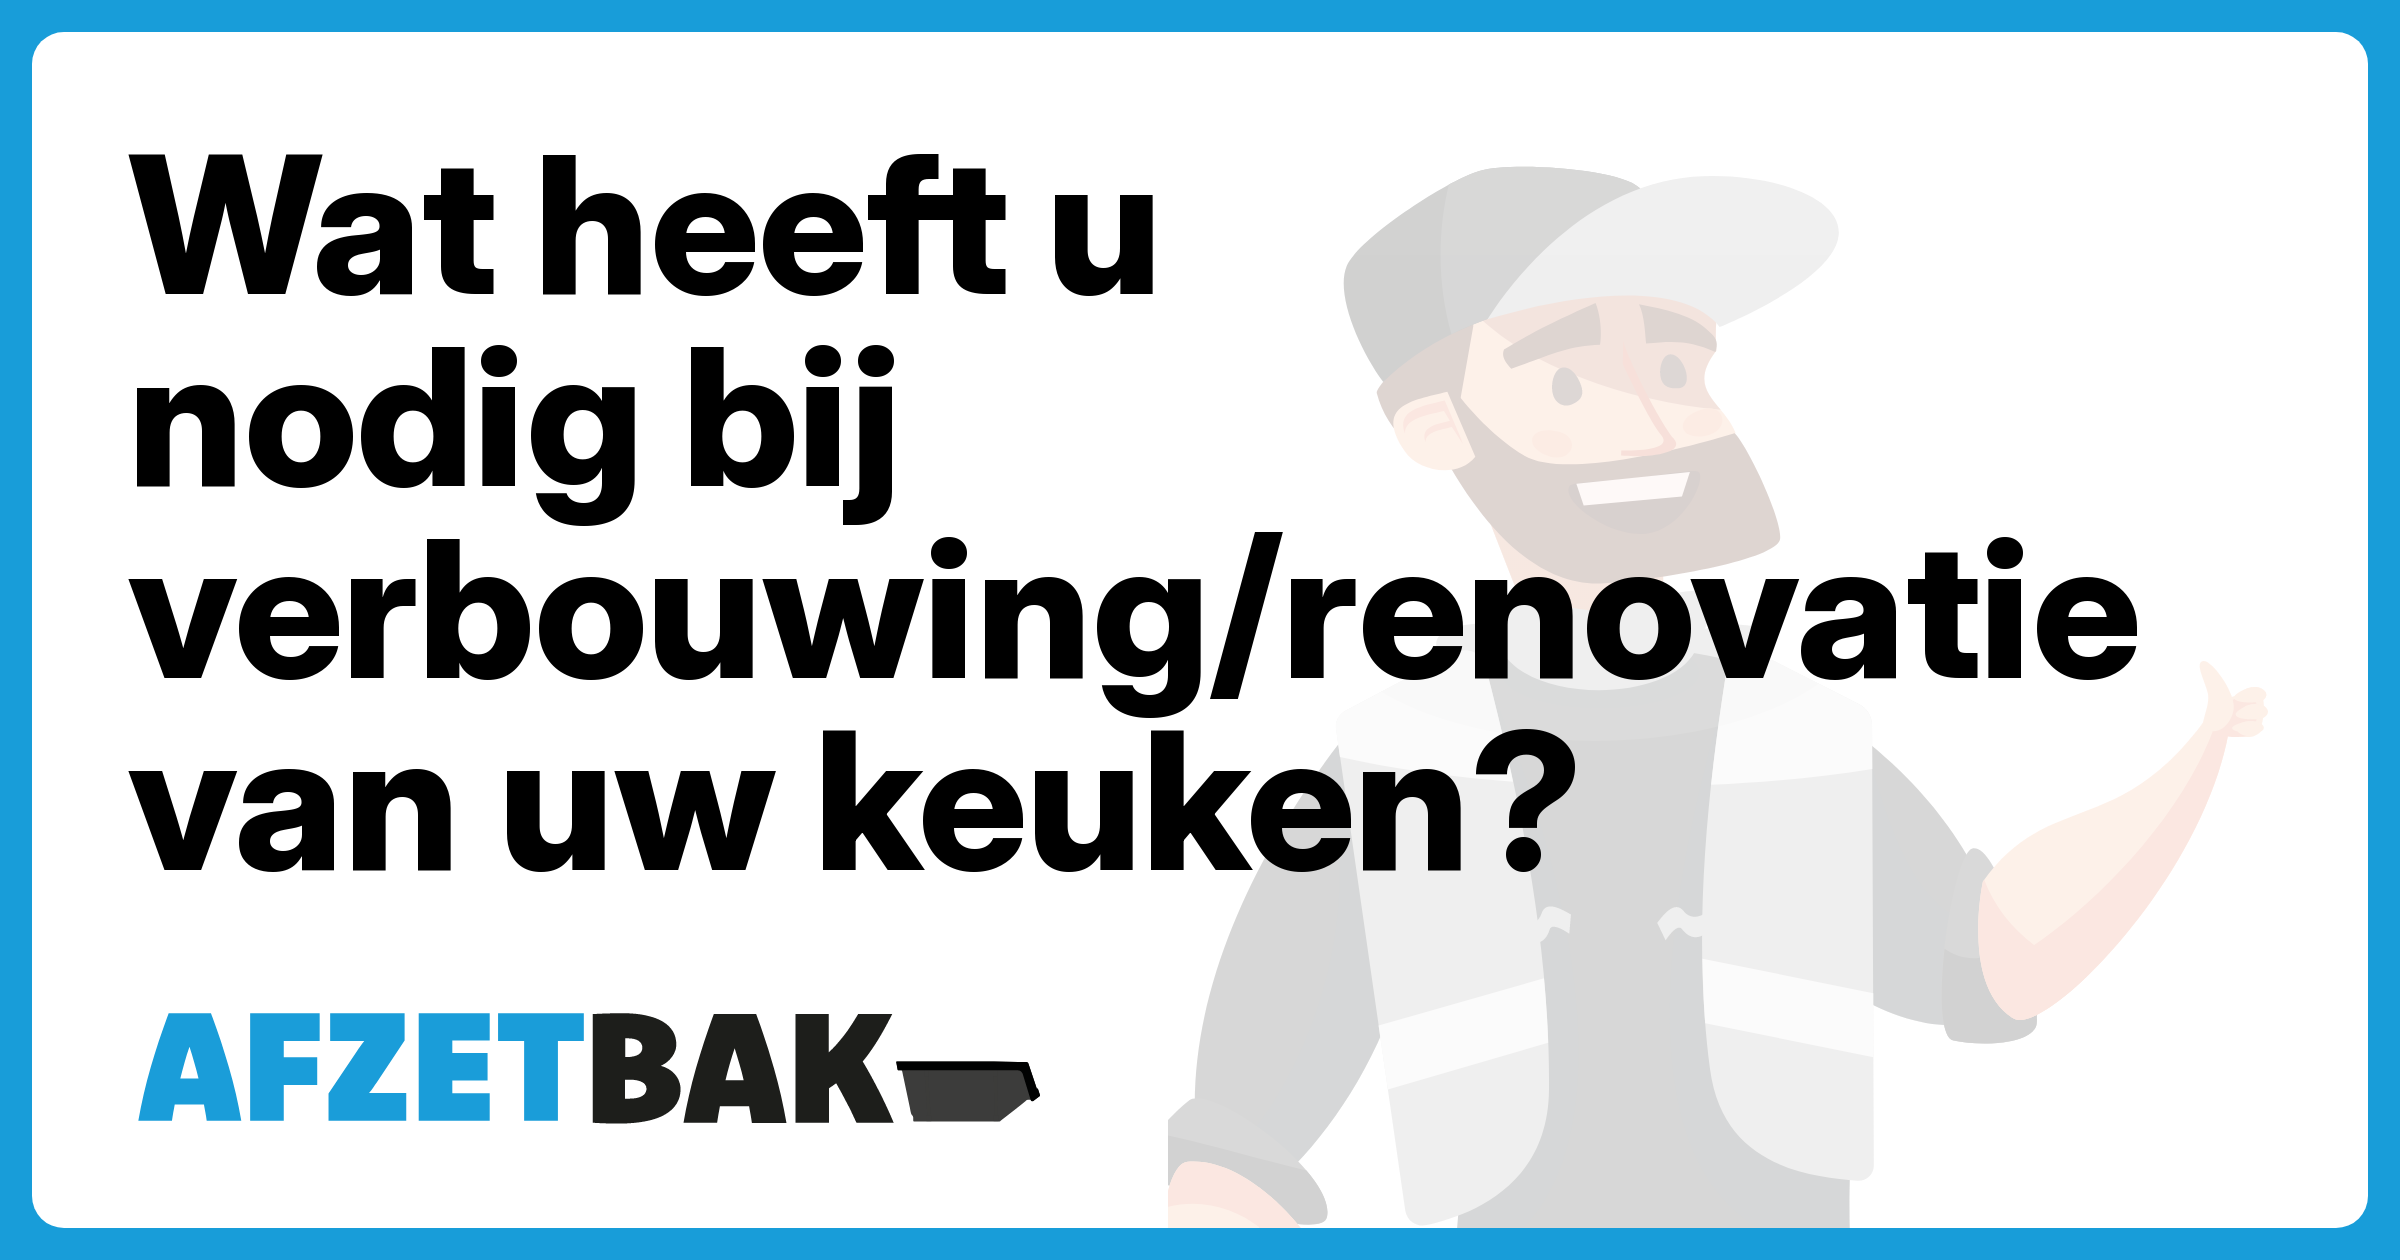 Wat heeft u nodig bij verbouwing/renovatie van uw keuken? - Afzetbak.nl